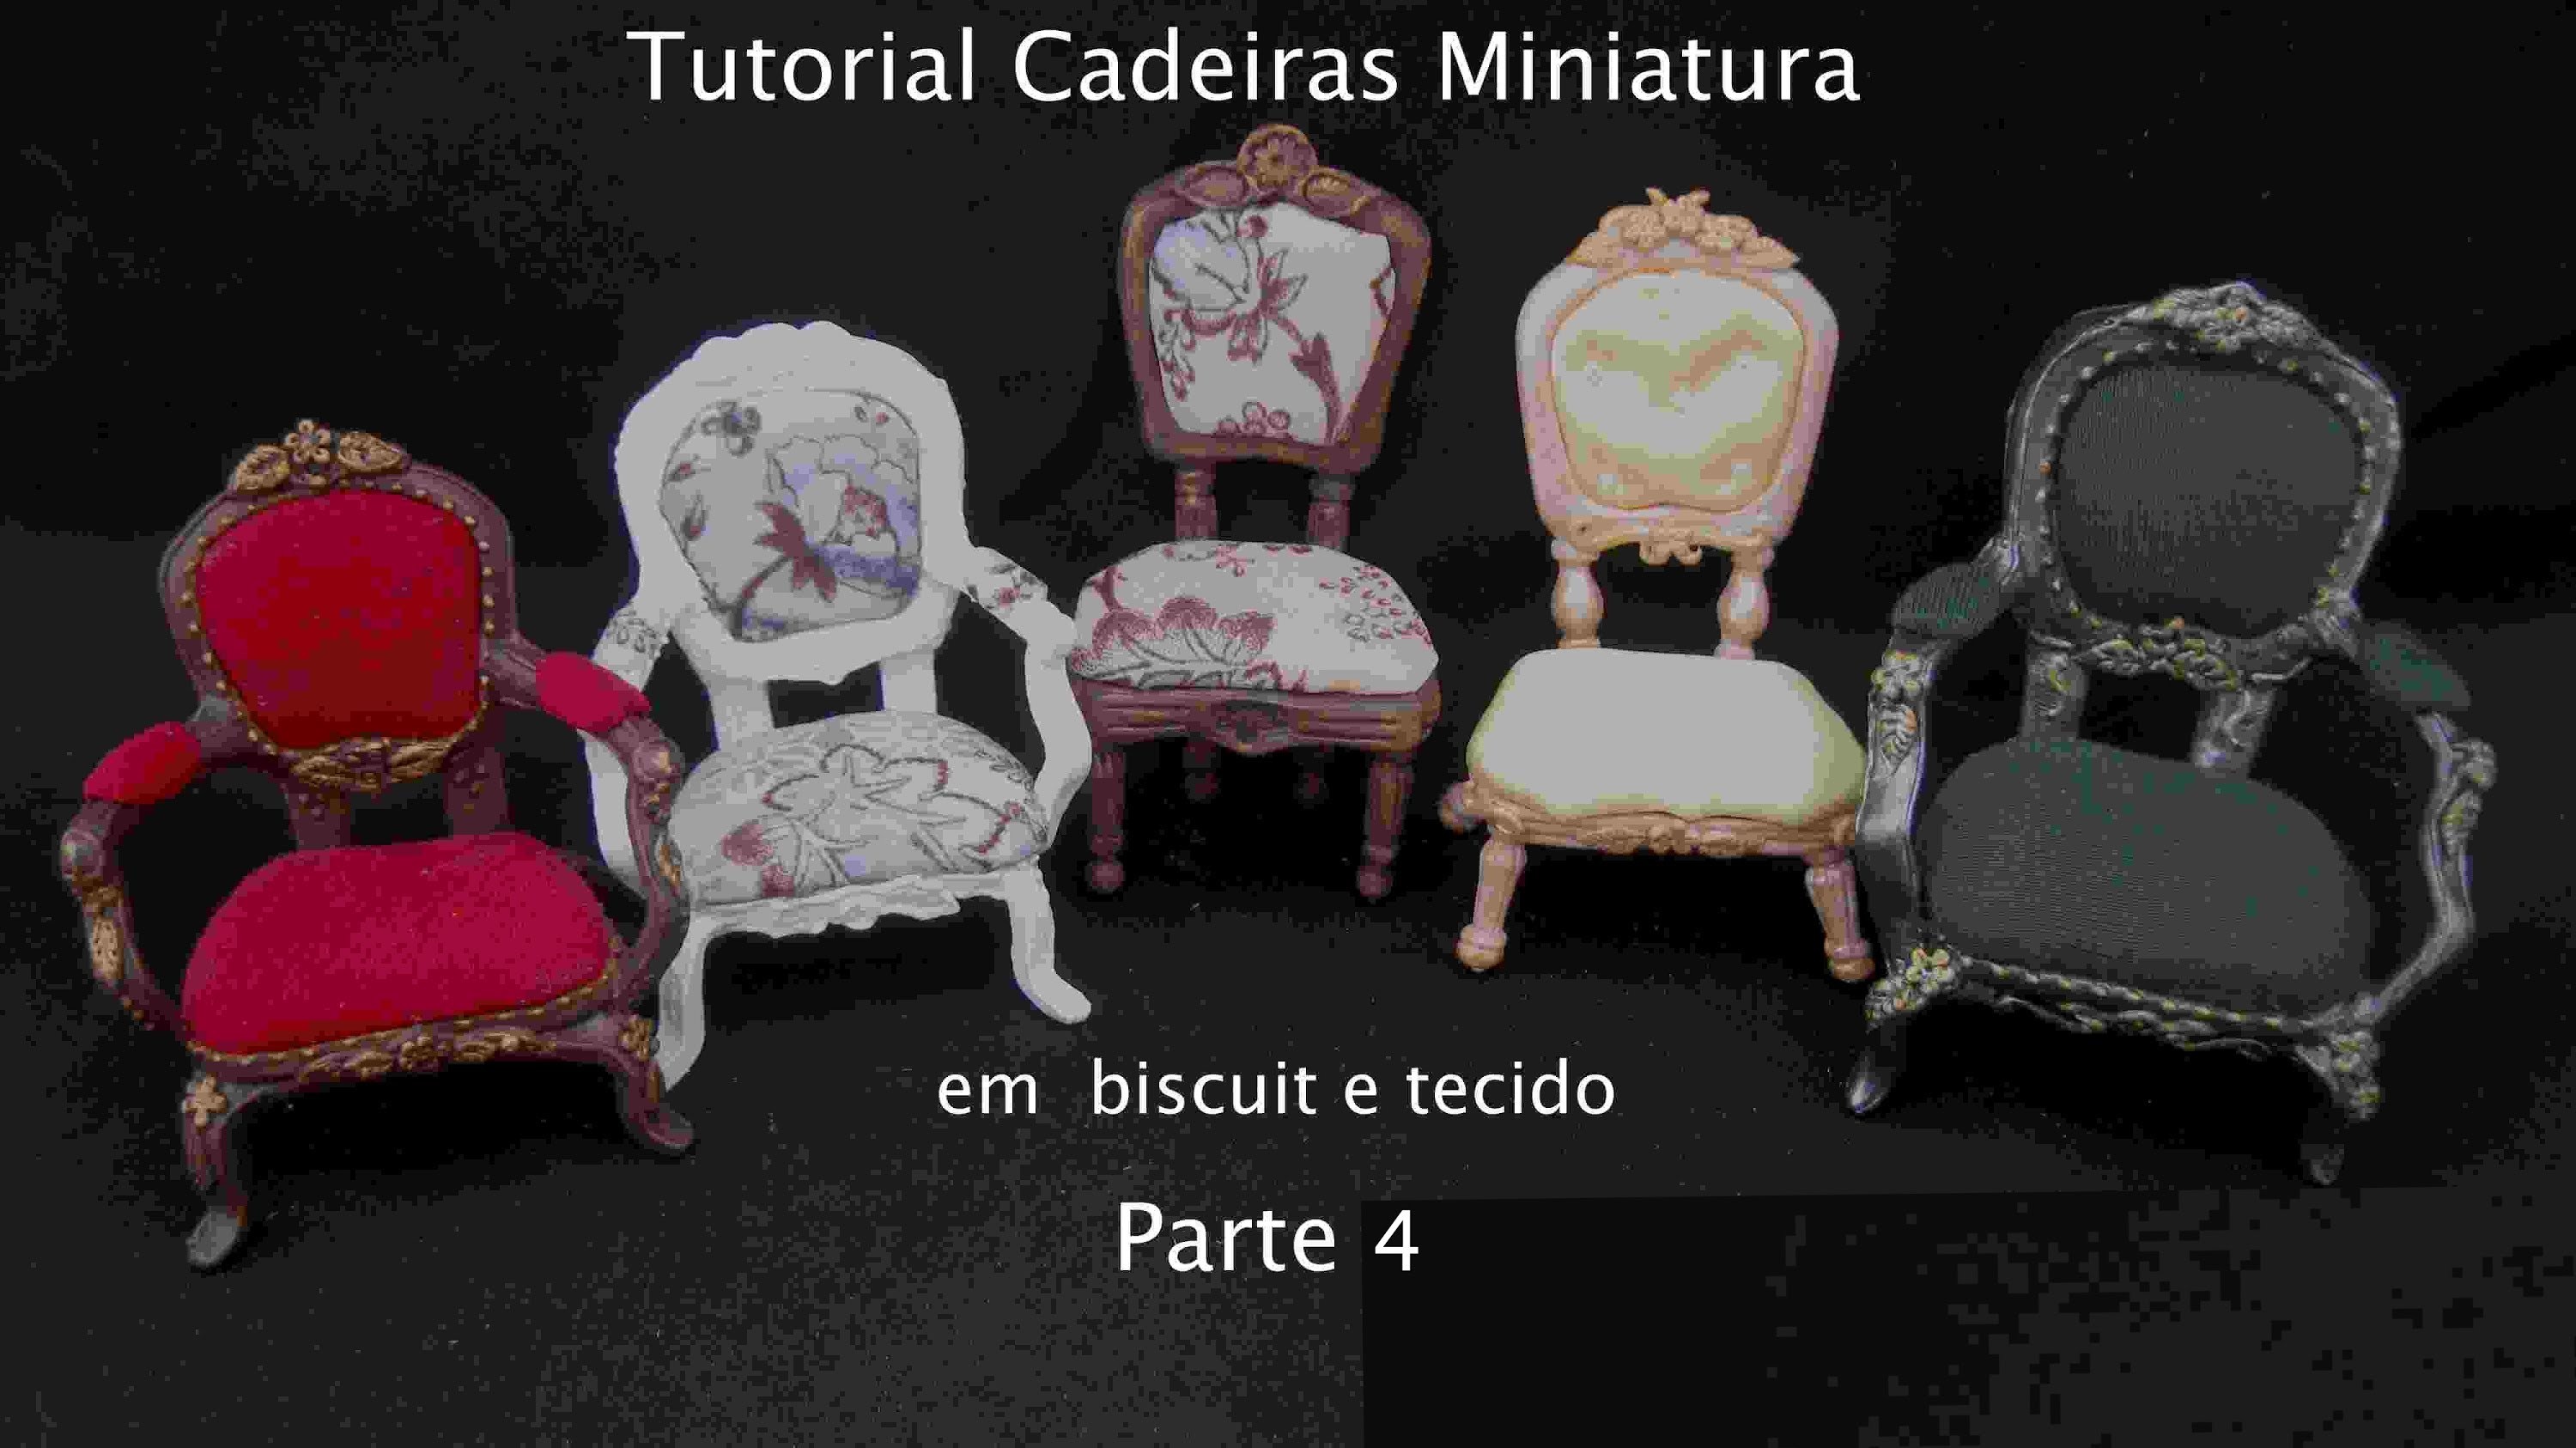 Cadeira miniatura em biscuit e tecido- parte 4